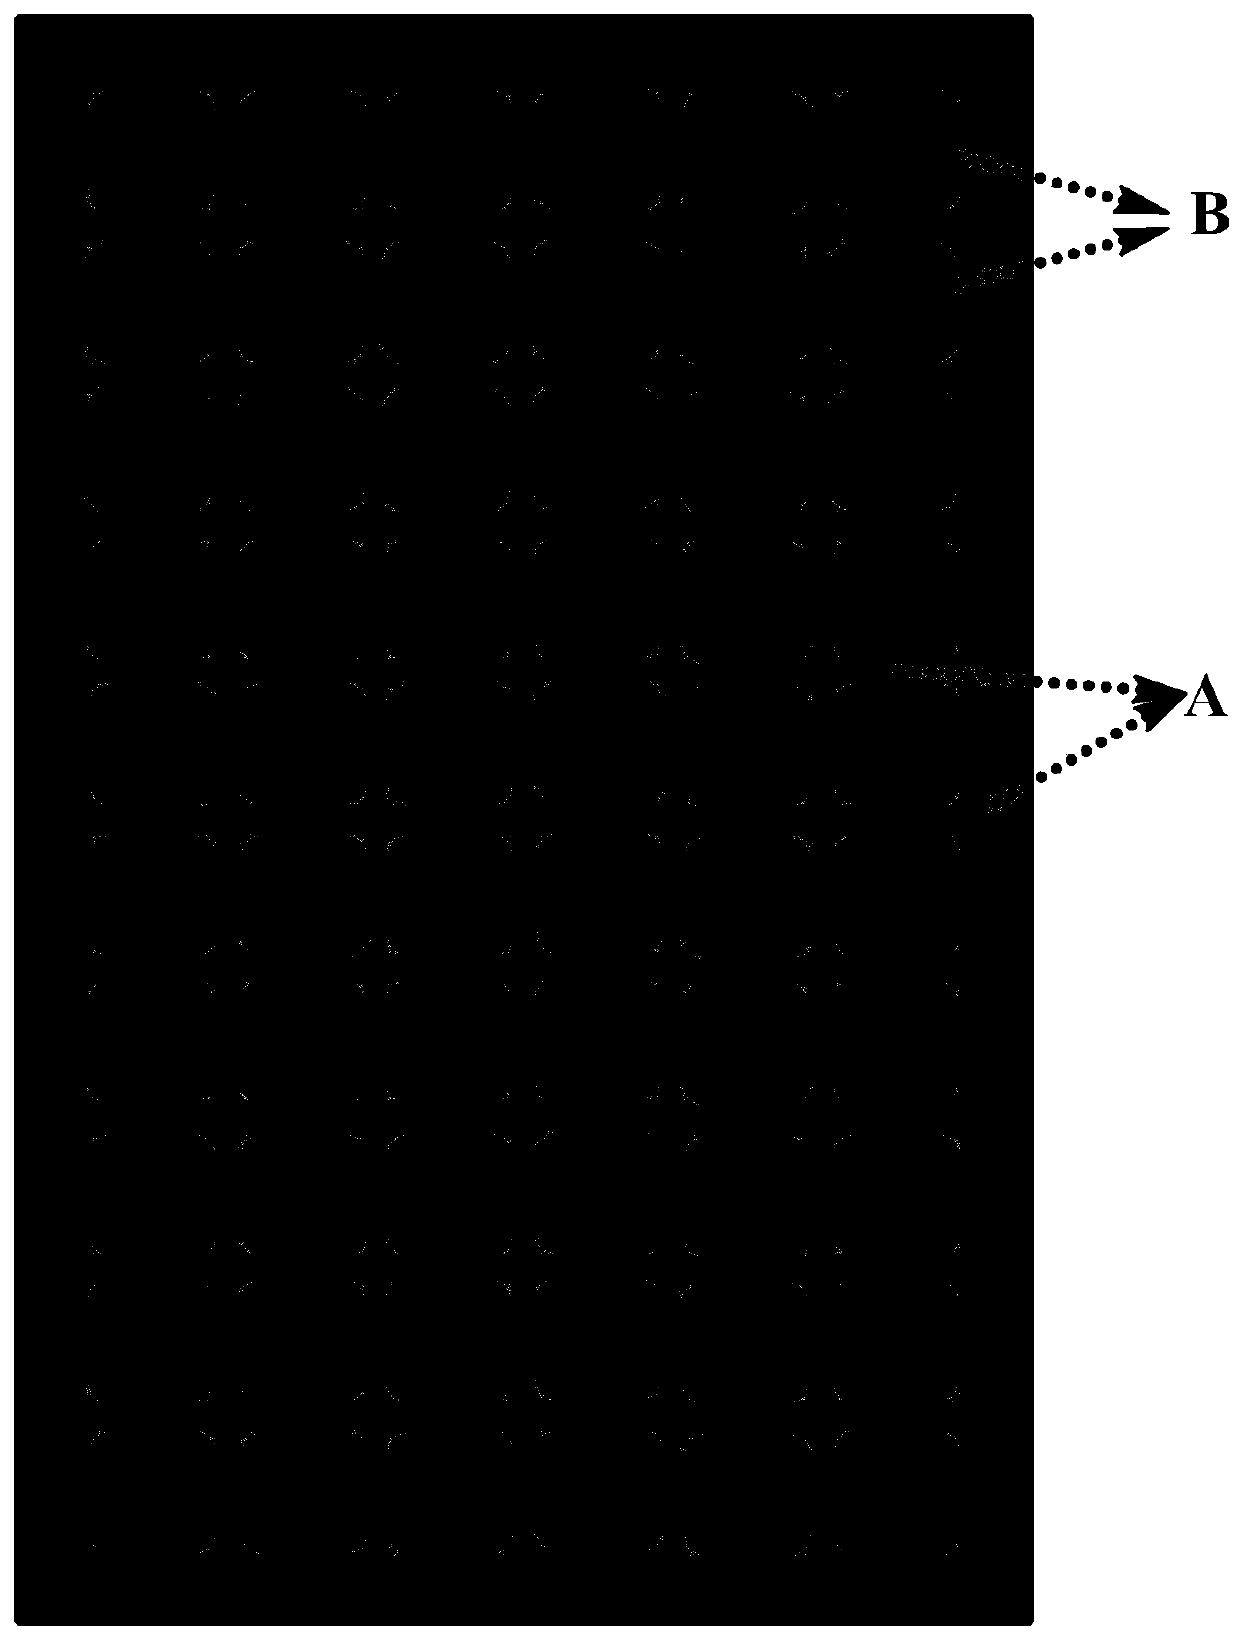 A patterned transparent backsheet material